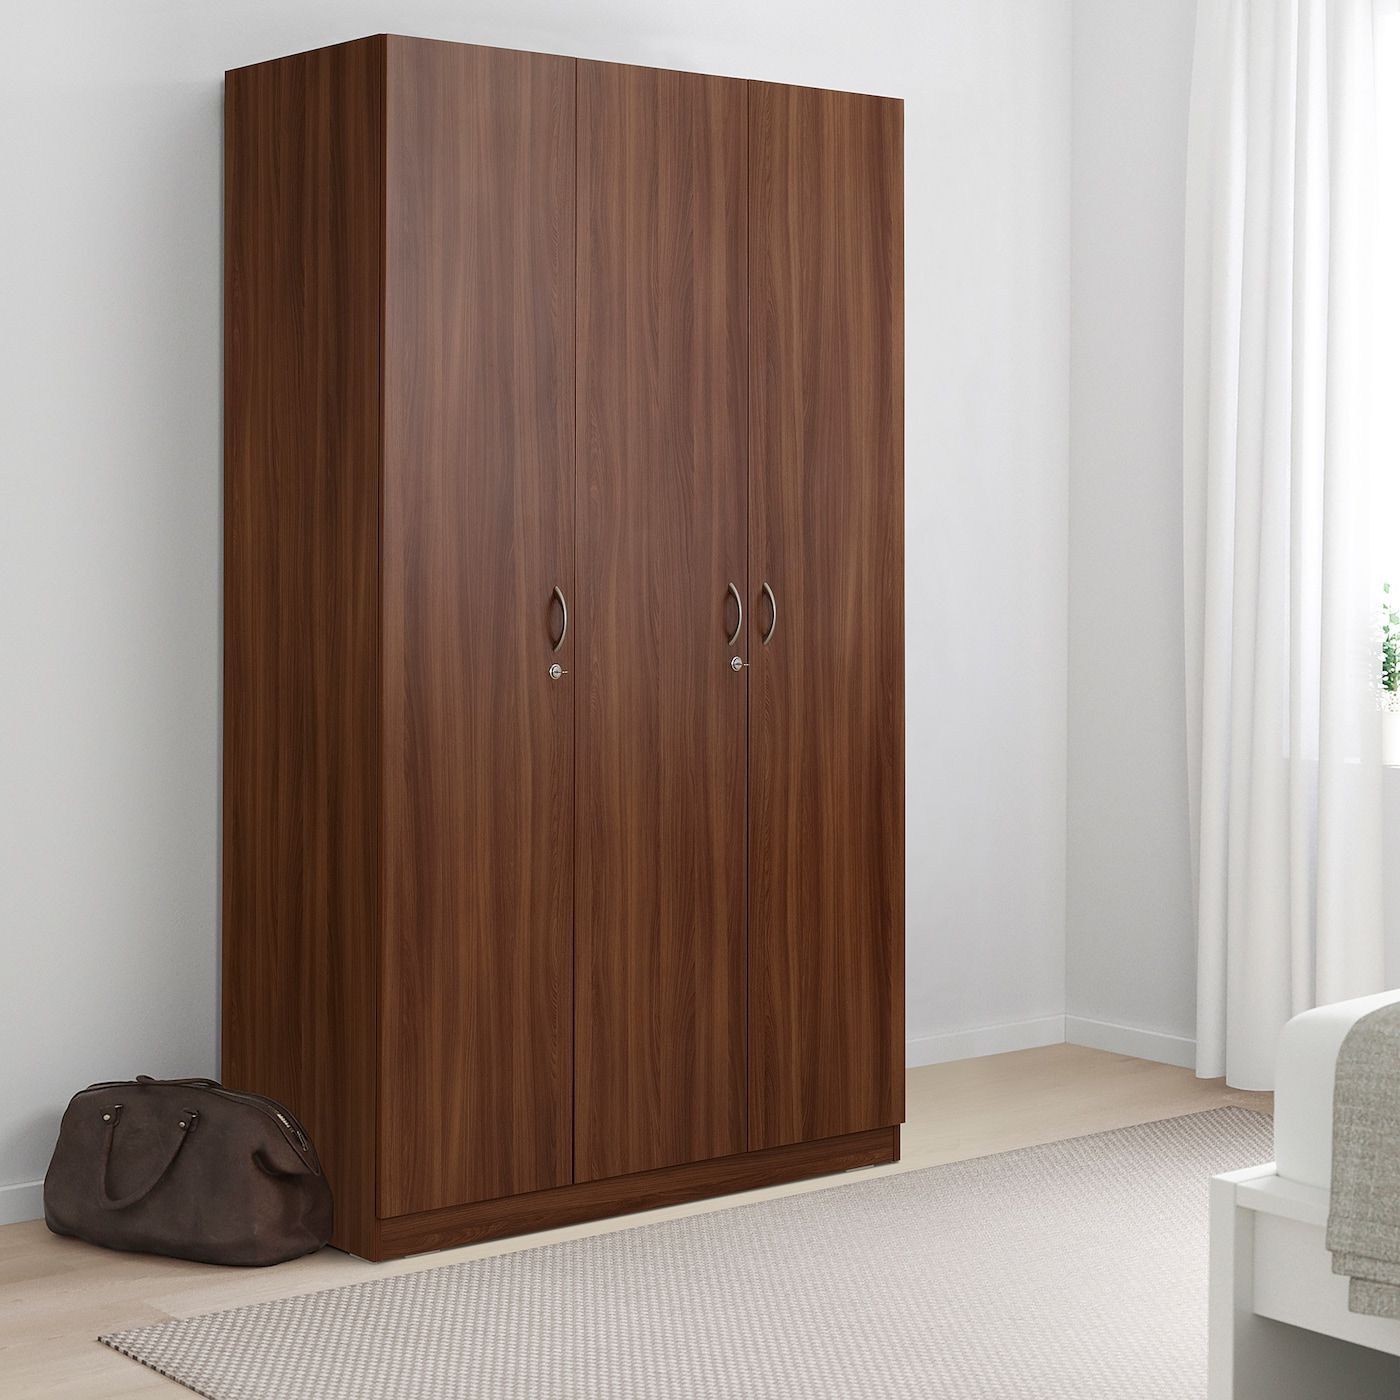 Nodeland Wardrobe With 3 Doors, Medium Brown, 120x52x202 Cm  (471/4x203/8x791/2") – Ikea For Cheap 3 Door Wardrobes (View 8 of 20)